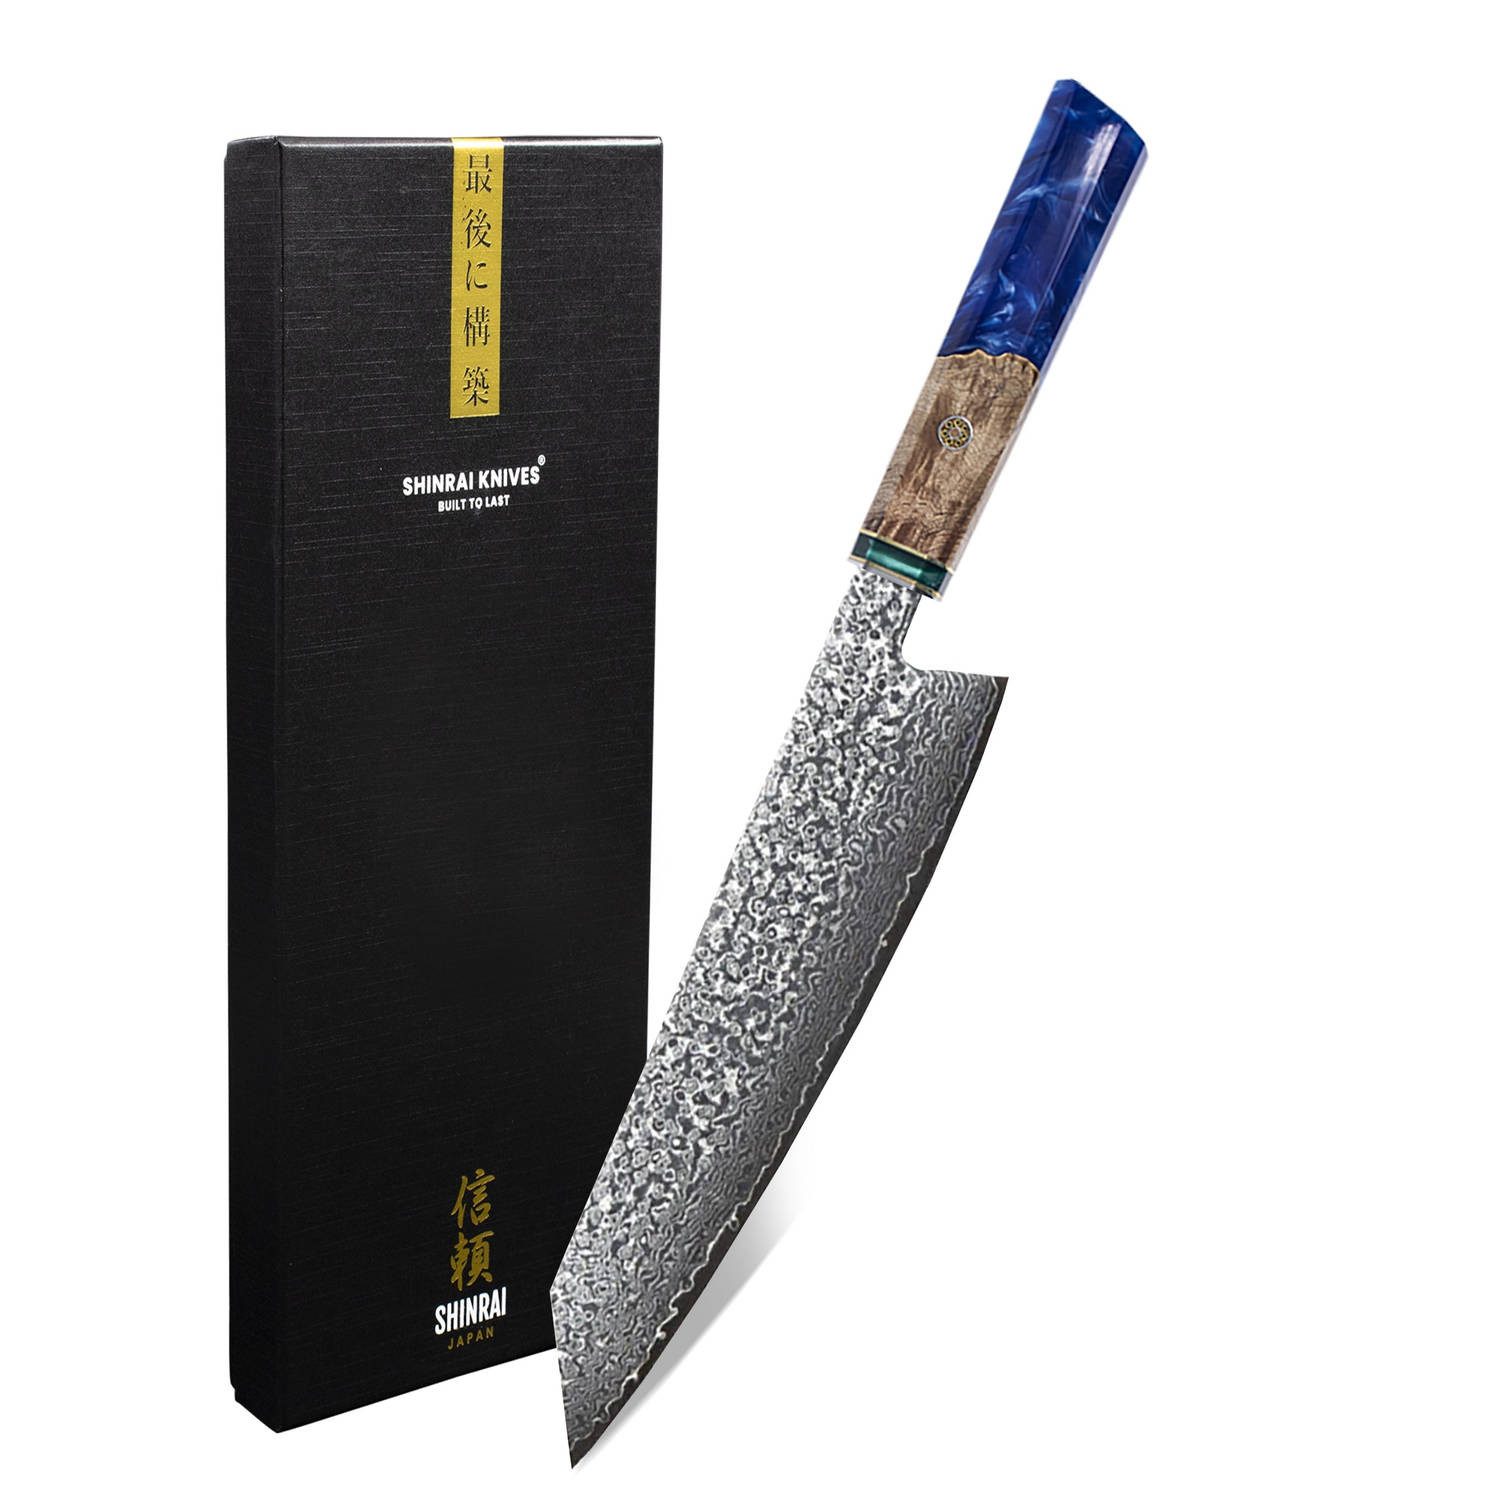 Shinrai Japan Damastmesser Kochmesser 23 cm - Damastmesser - Japanisches Messer Sapphire, Handgefertigt bis ins Detail